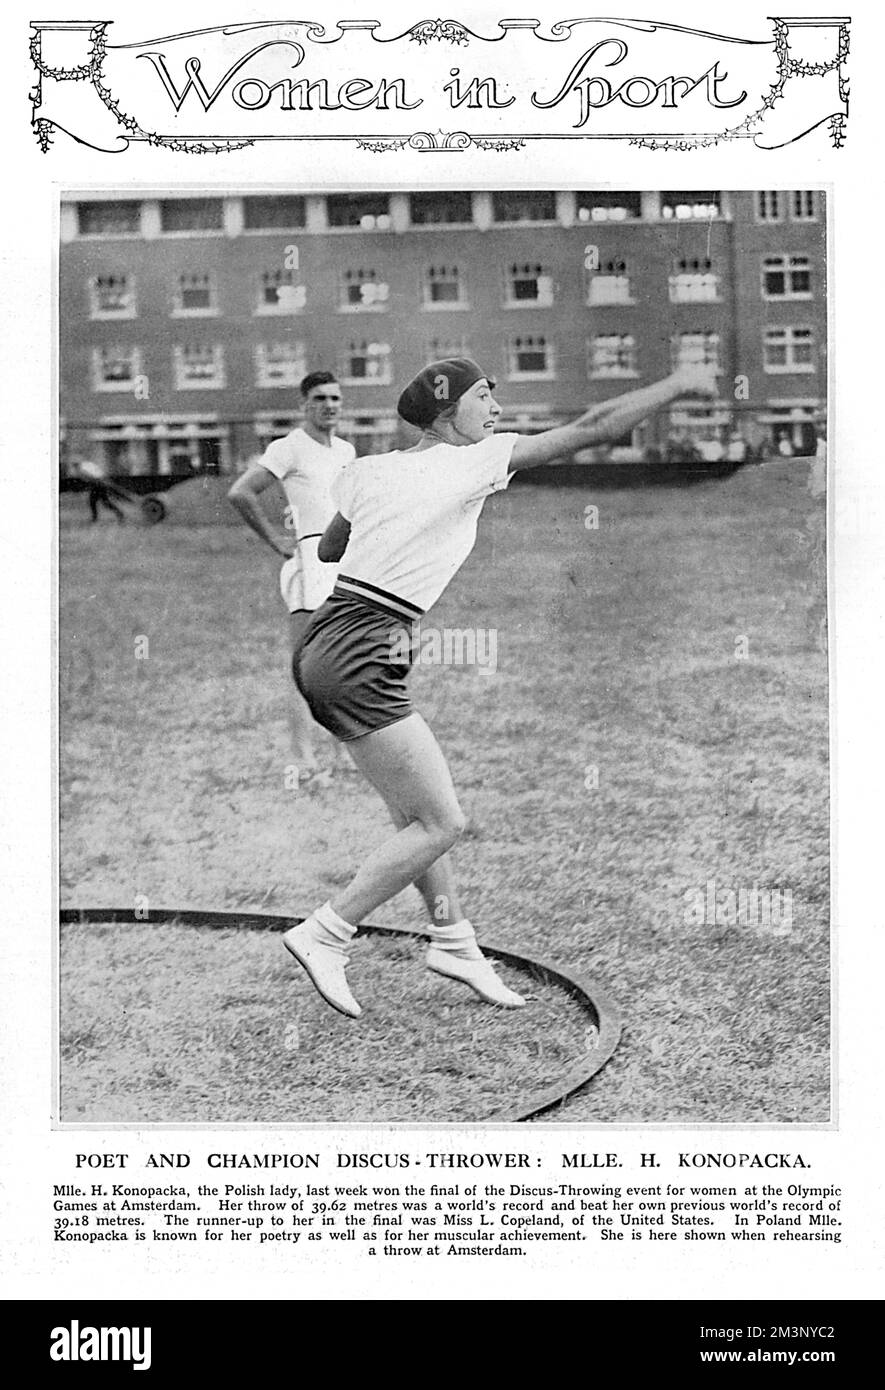 Halina Konopacka (1900 - 1989), famoso atleta e primo campione olimpico polacco (1928, Amsterdam). Ha partecipato ai Giochi Olimpici di Amsterdam, dove ha vinto una medaglia d'oro in Discus Throw, rompendo il suo record mondiale. Questo è stato il primo evento femminile di atletica e campo vincitore d'oro delle Olimpiadi. Era conosciuta anche in Polonia per la sua poesia secondo la didascalia. Che gallone. Data: 1928 Foto Stock